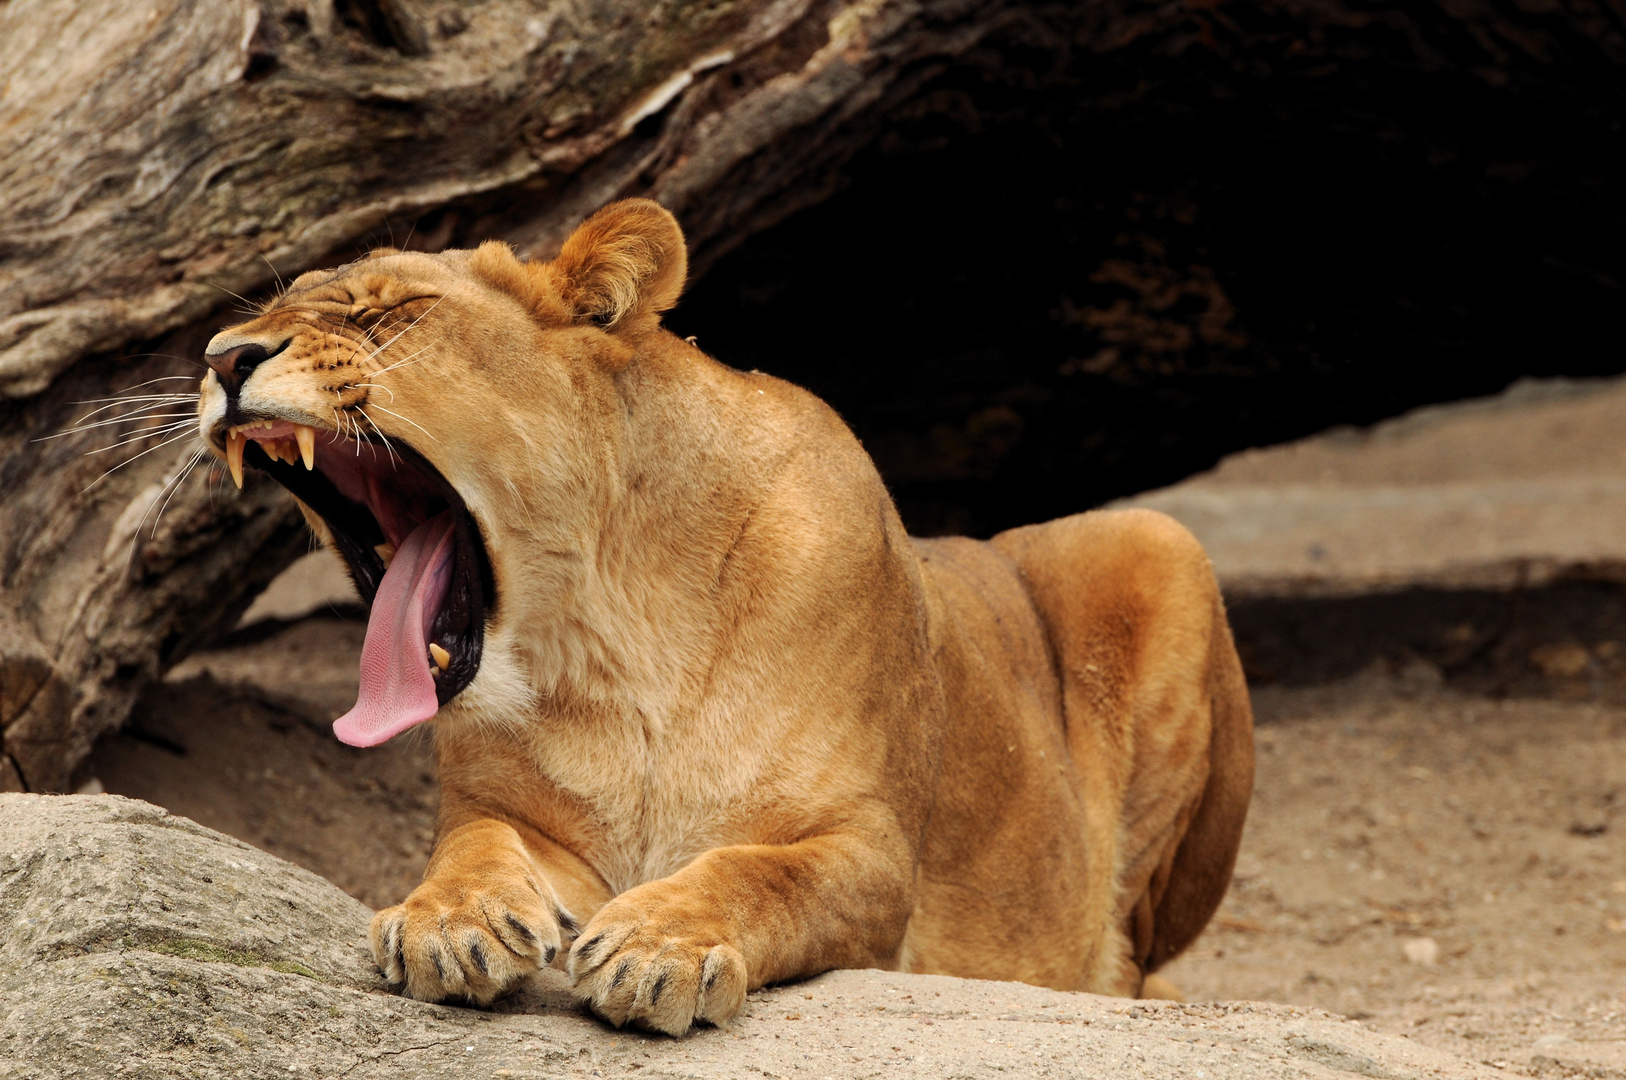 Yawning!